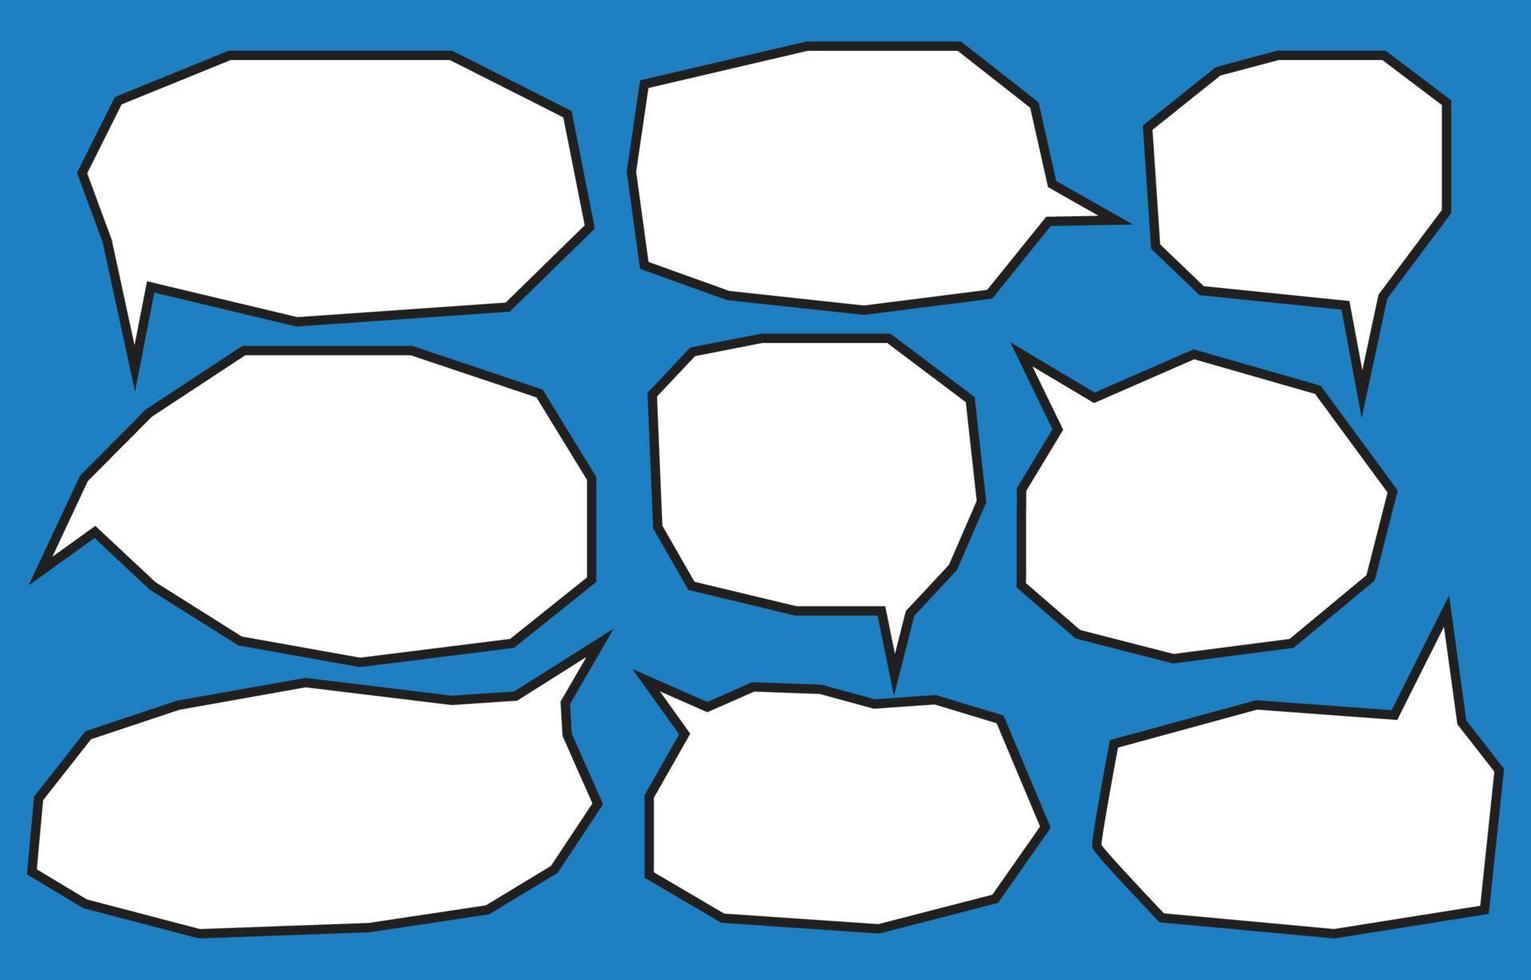 Stellen Sie Sprechblasen auf blauem Hintergrund ein. Chat-Box oder Chat-Vektor-Doodle-Nachricht oder Kommunikationssymbolwolke, die für Comics und Comics-Dialog spricht vektor